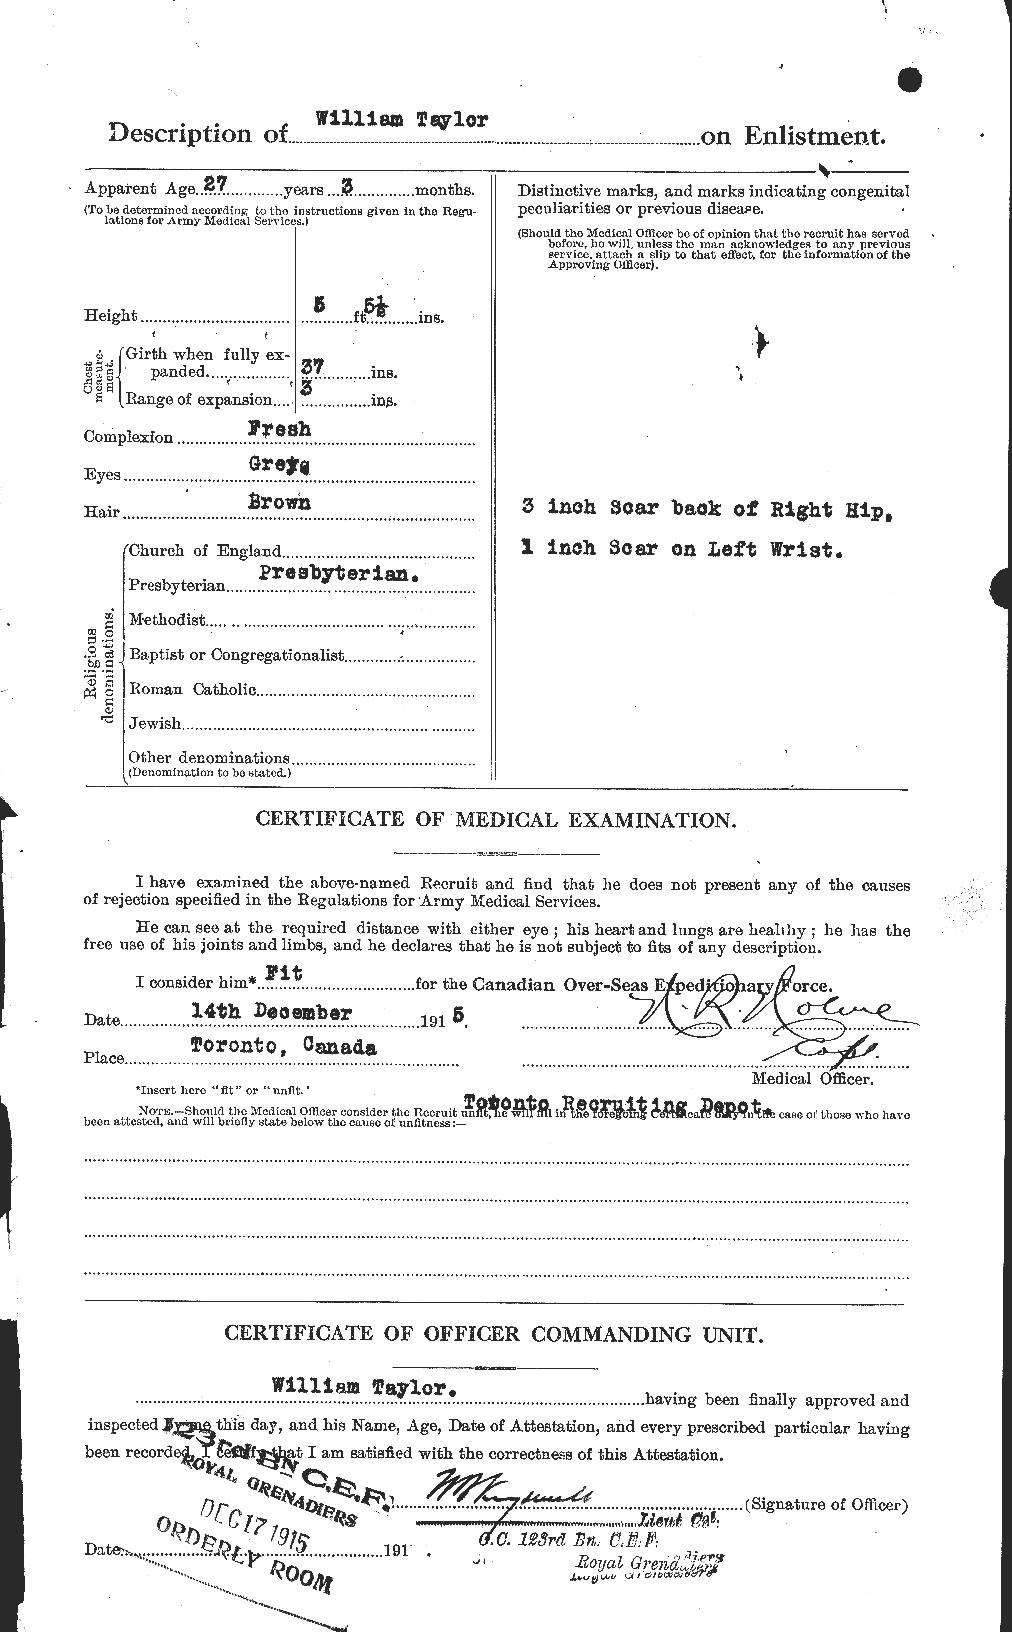 Dossiers du Personnel de la Première Guerre mondiale - CEC 628151b